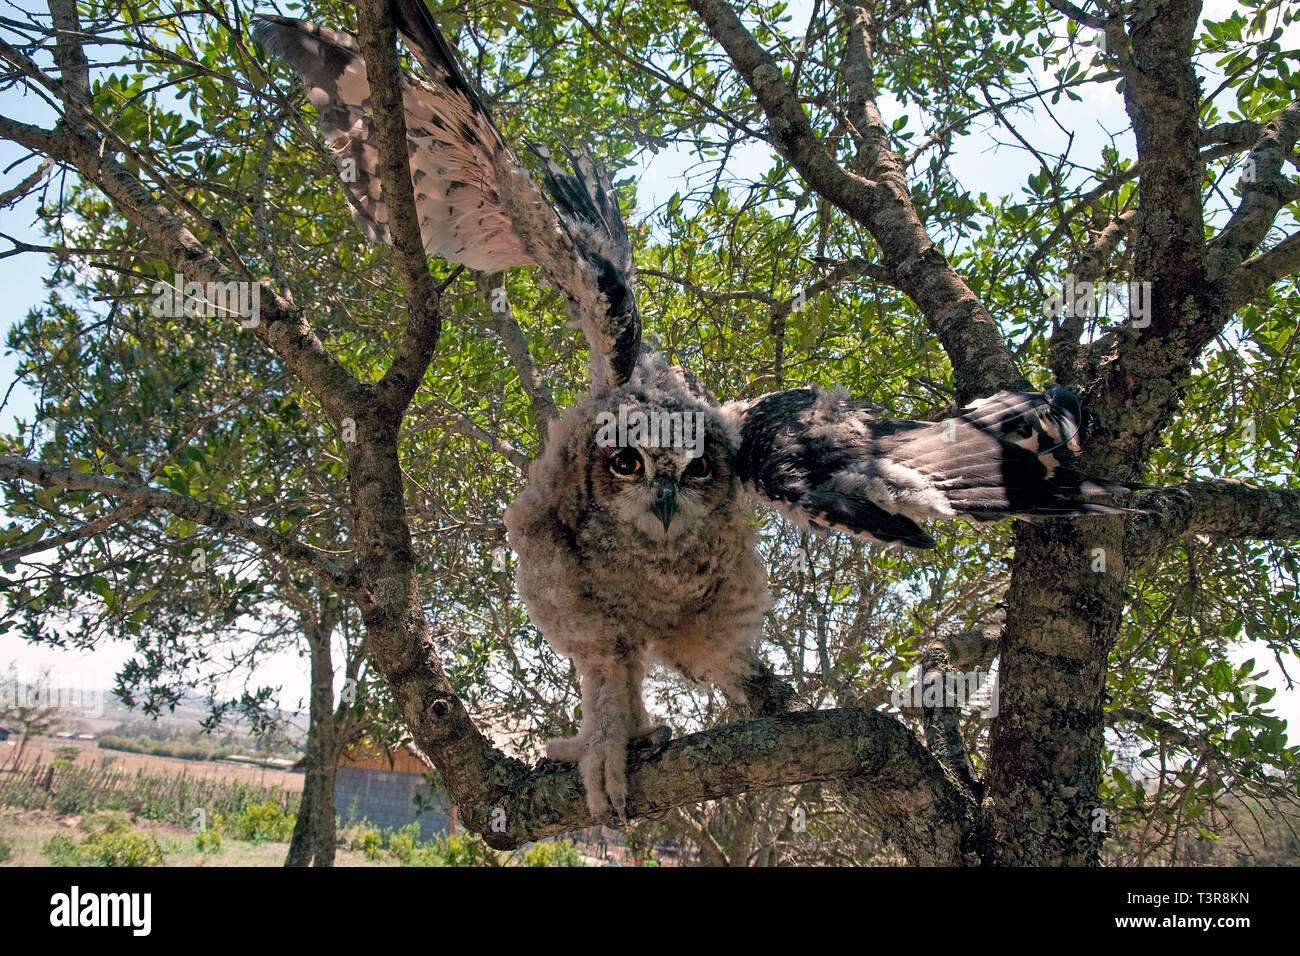 Aigle géant de verreaux, Chouette-hibou ou laiteux eagle owl (Bubo lacteus), à partir d'avion de la branche d'un arbre, Amboseli, Kenya, Africa Banque D'Images